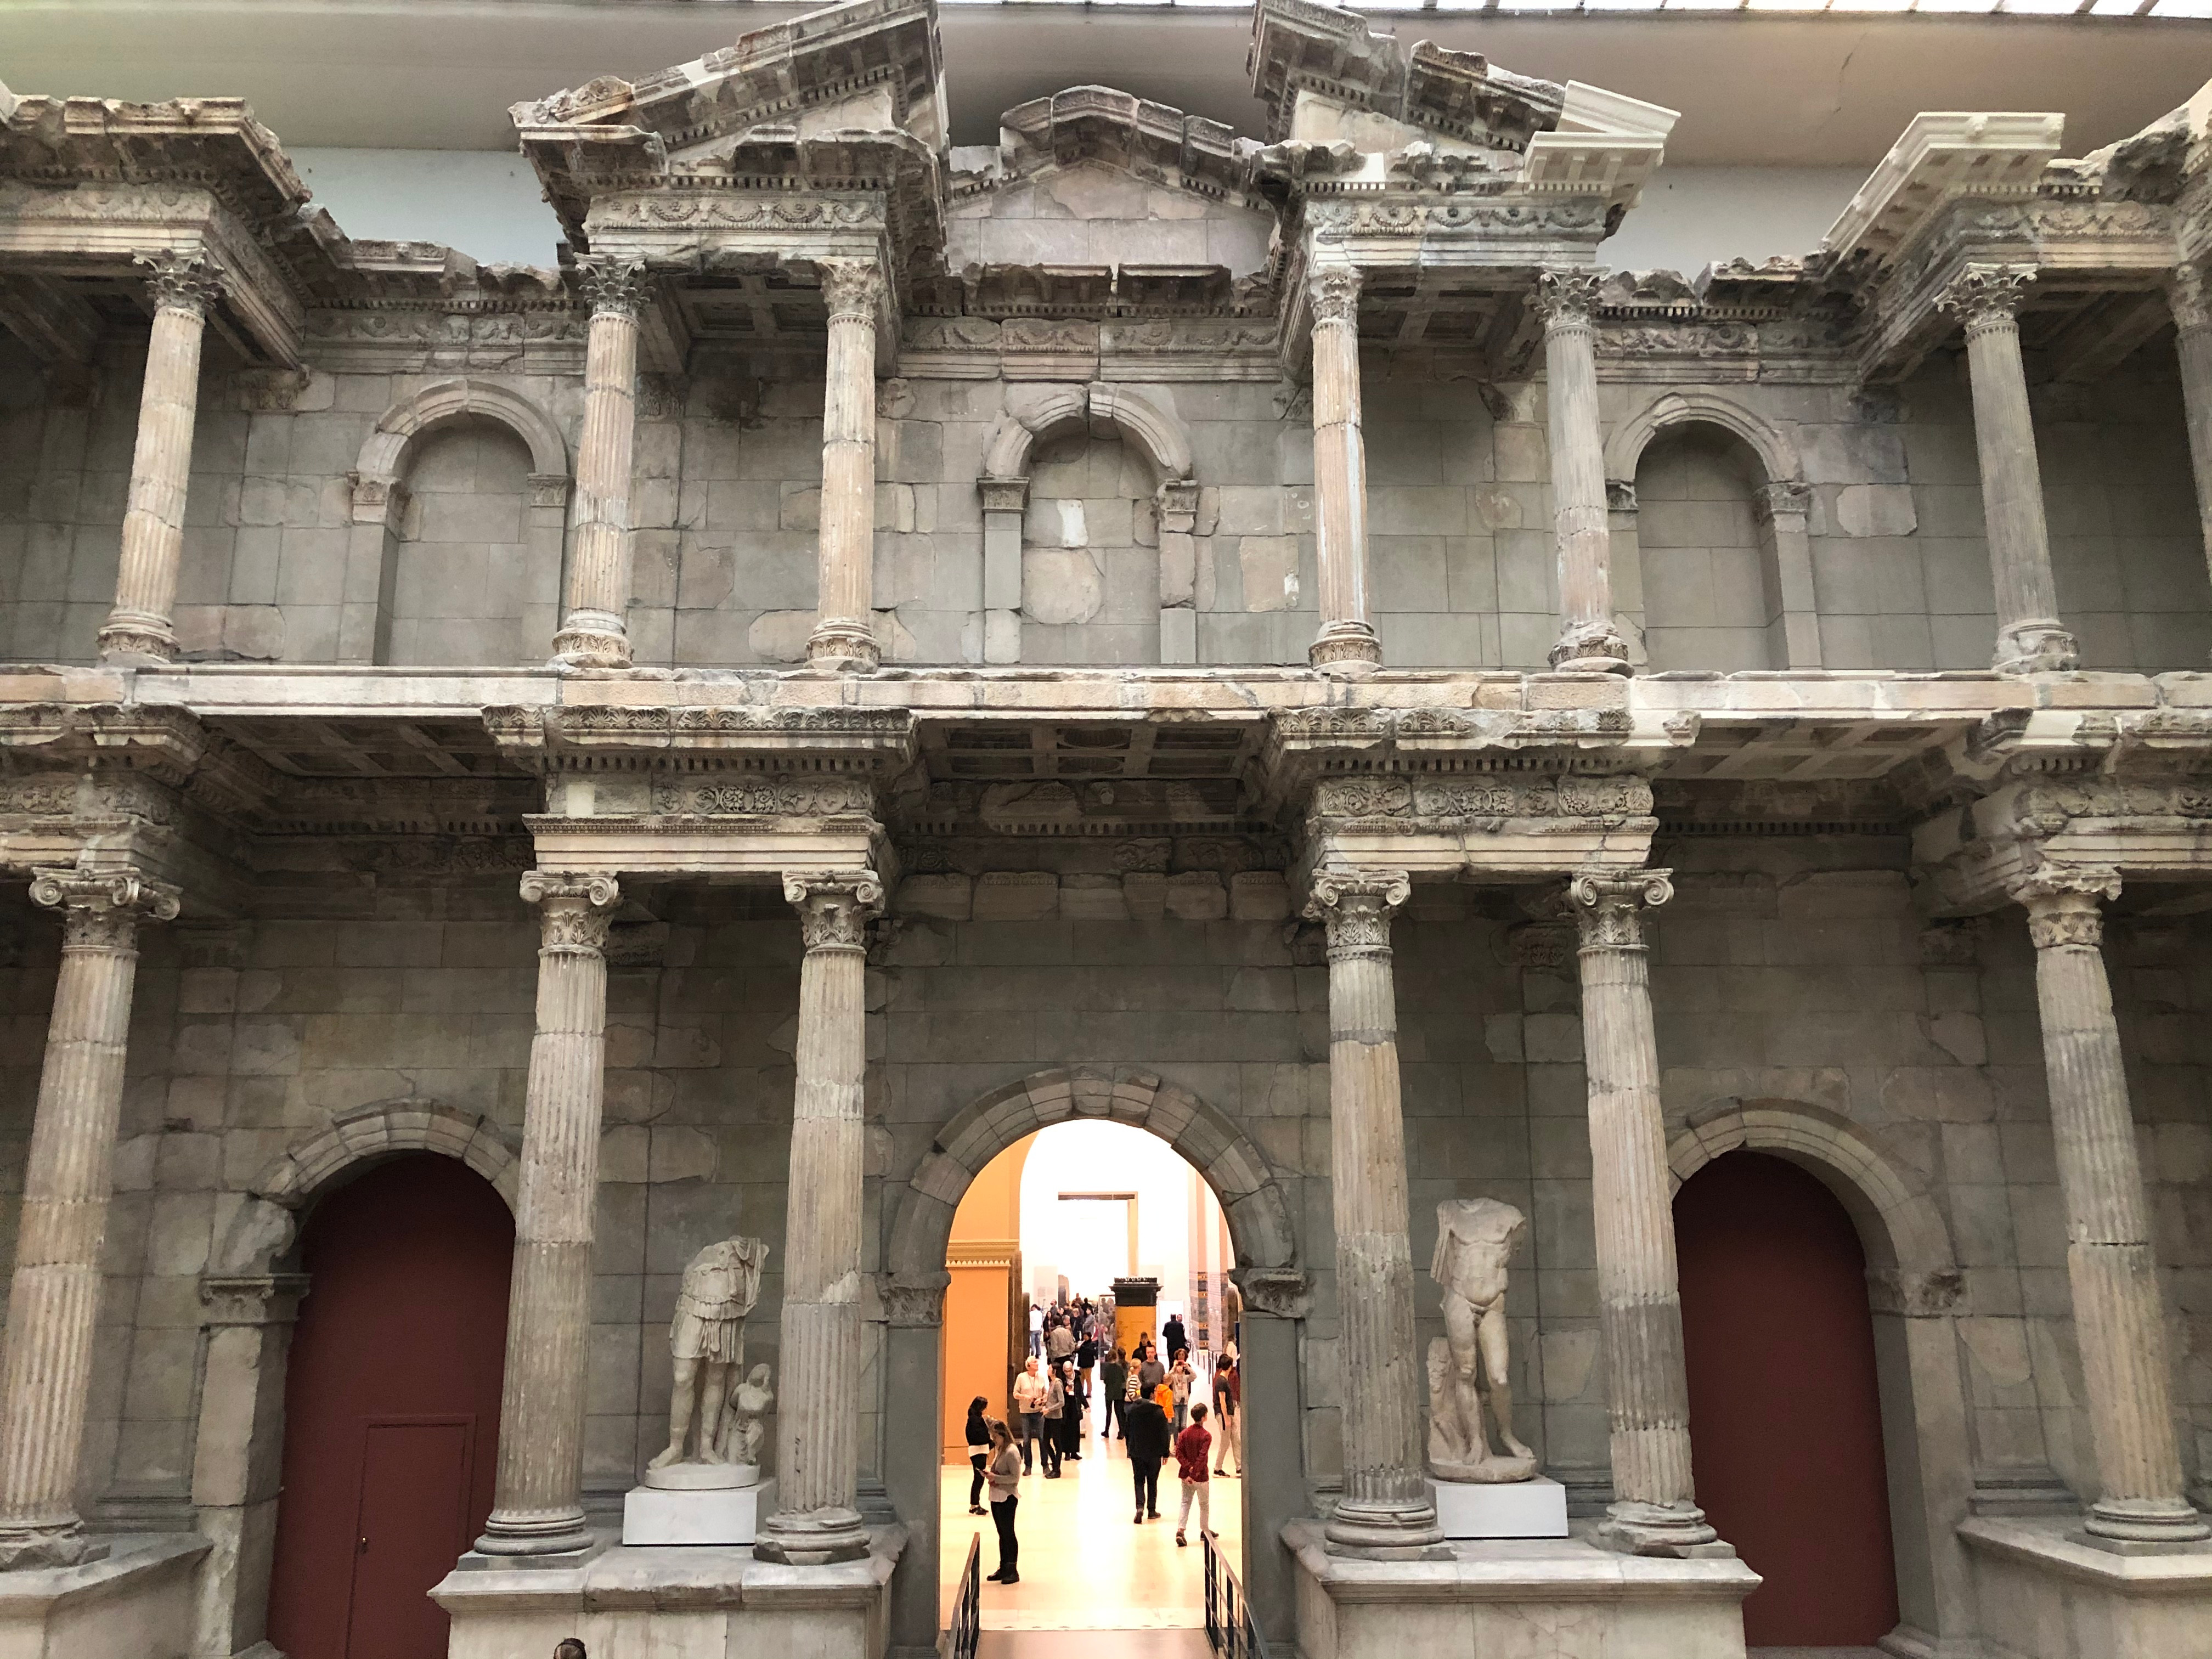 Almanya’nın kalbi Berlin’de 2. gün: Pergamon (Bergama) Müzesi - Resim: 4